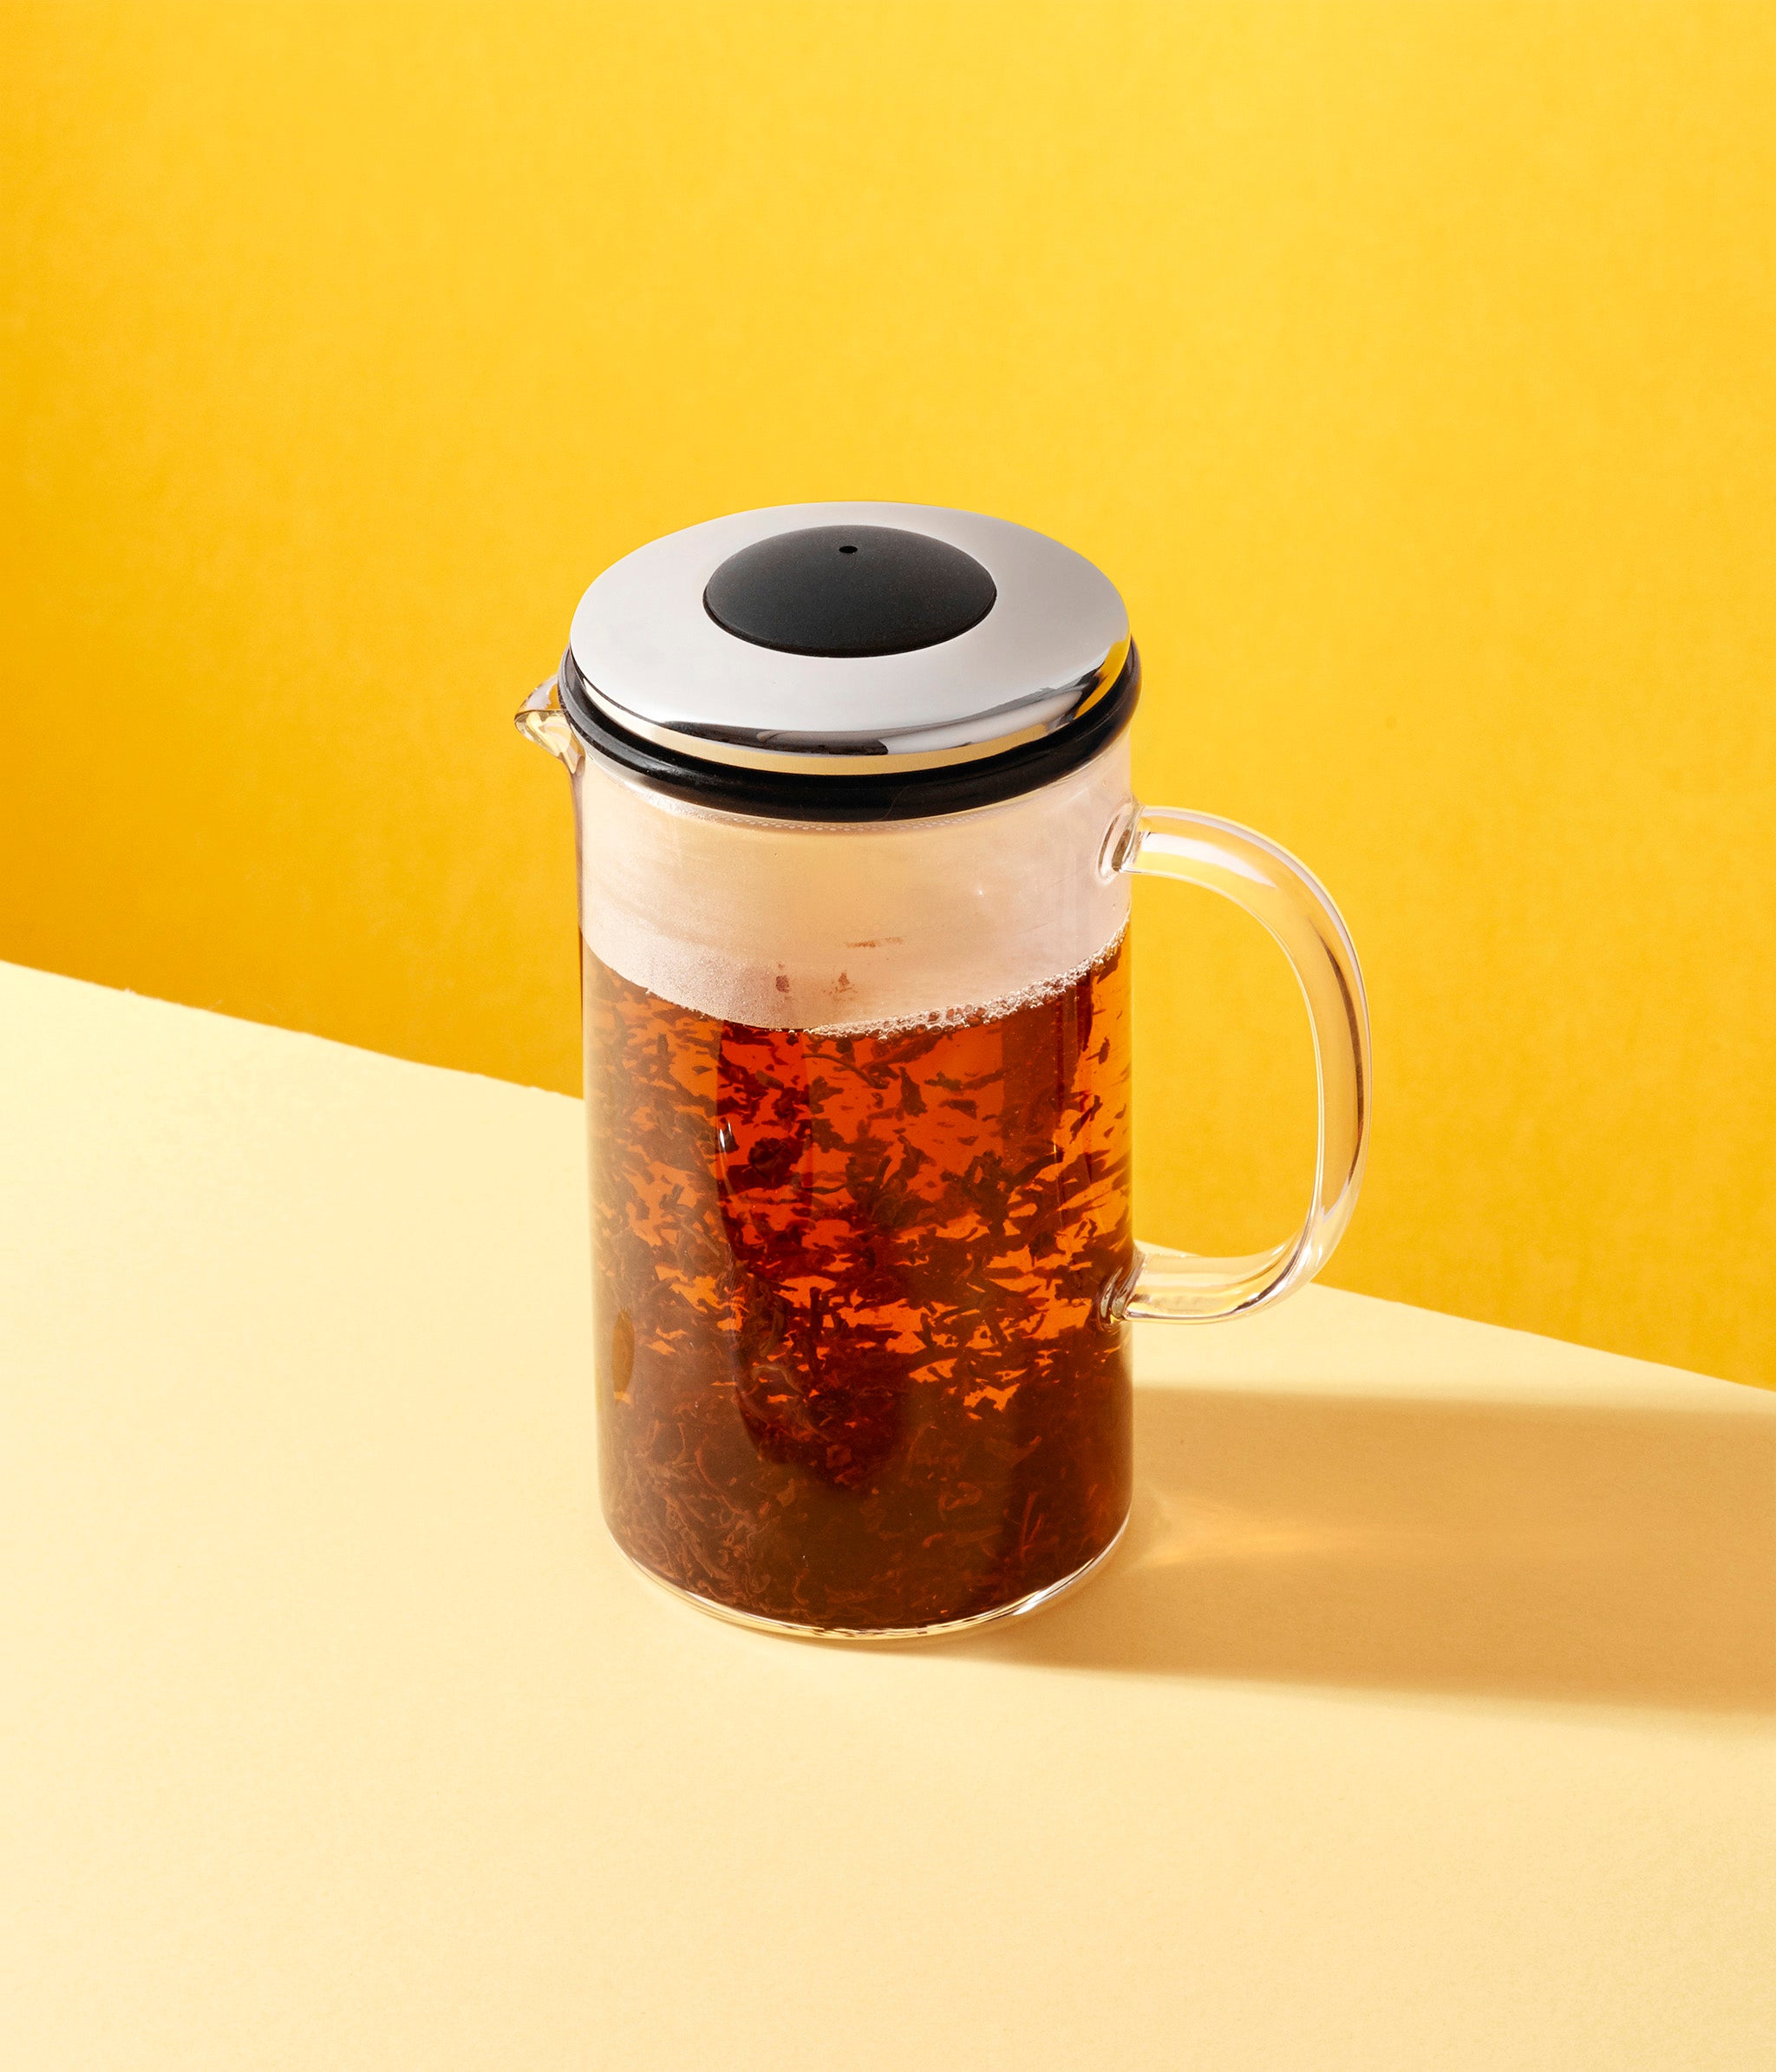 Brew Tea Co. Chai Tea Bags 15s – Woodbourne Deli